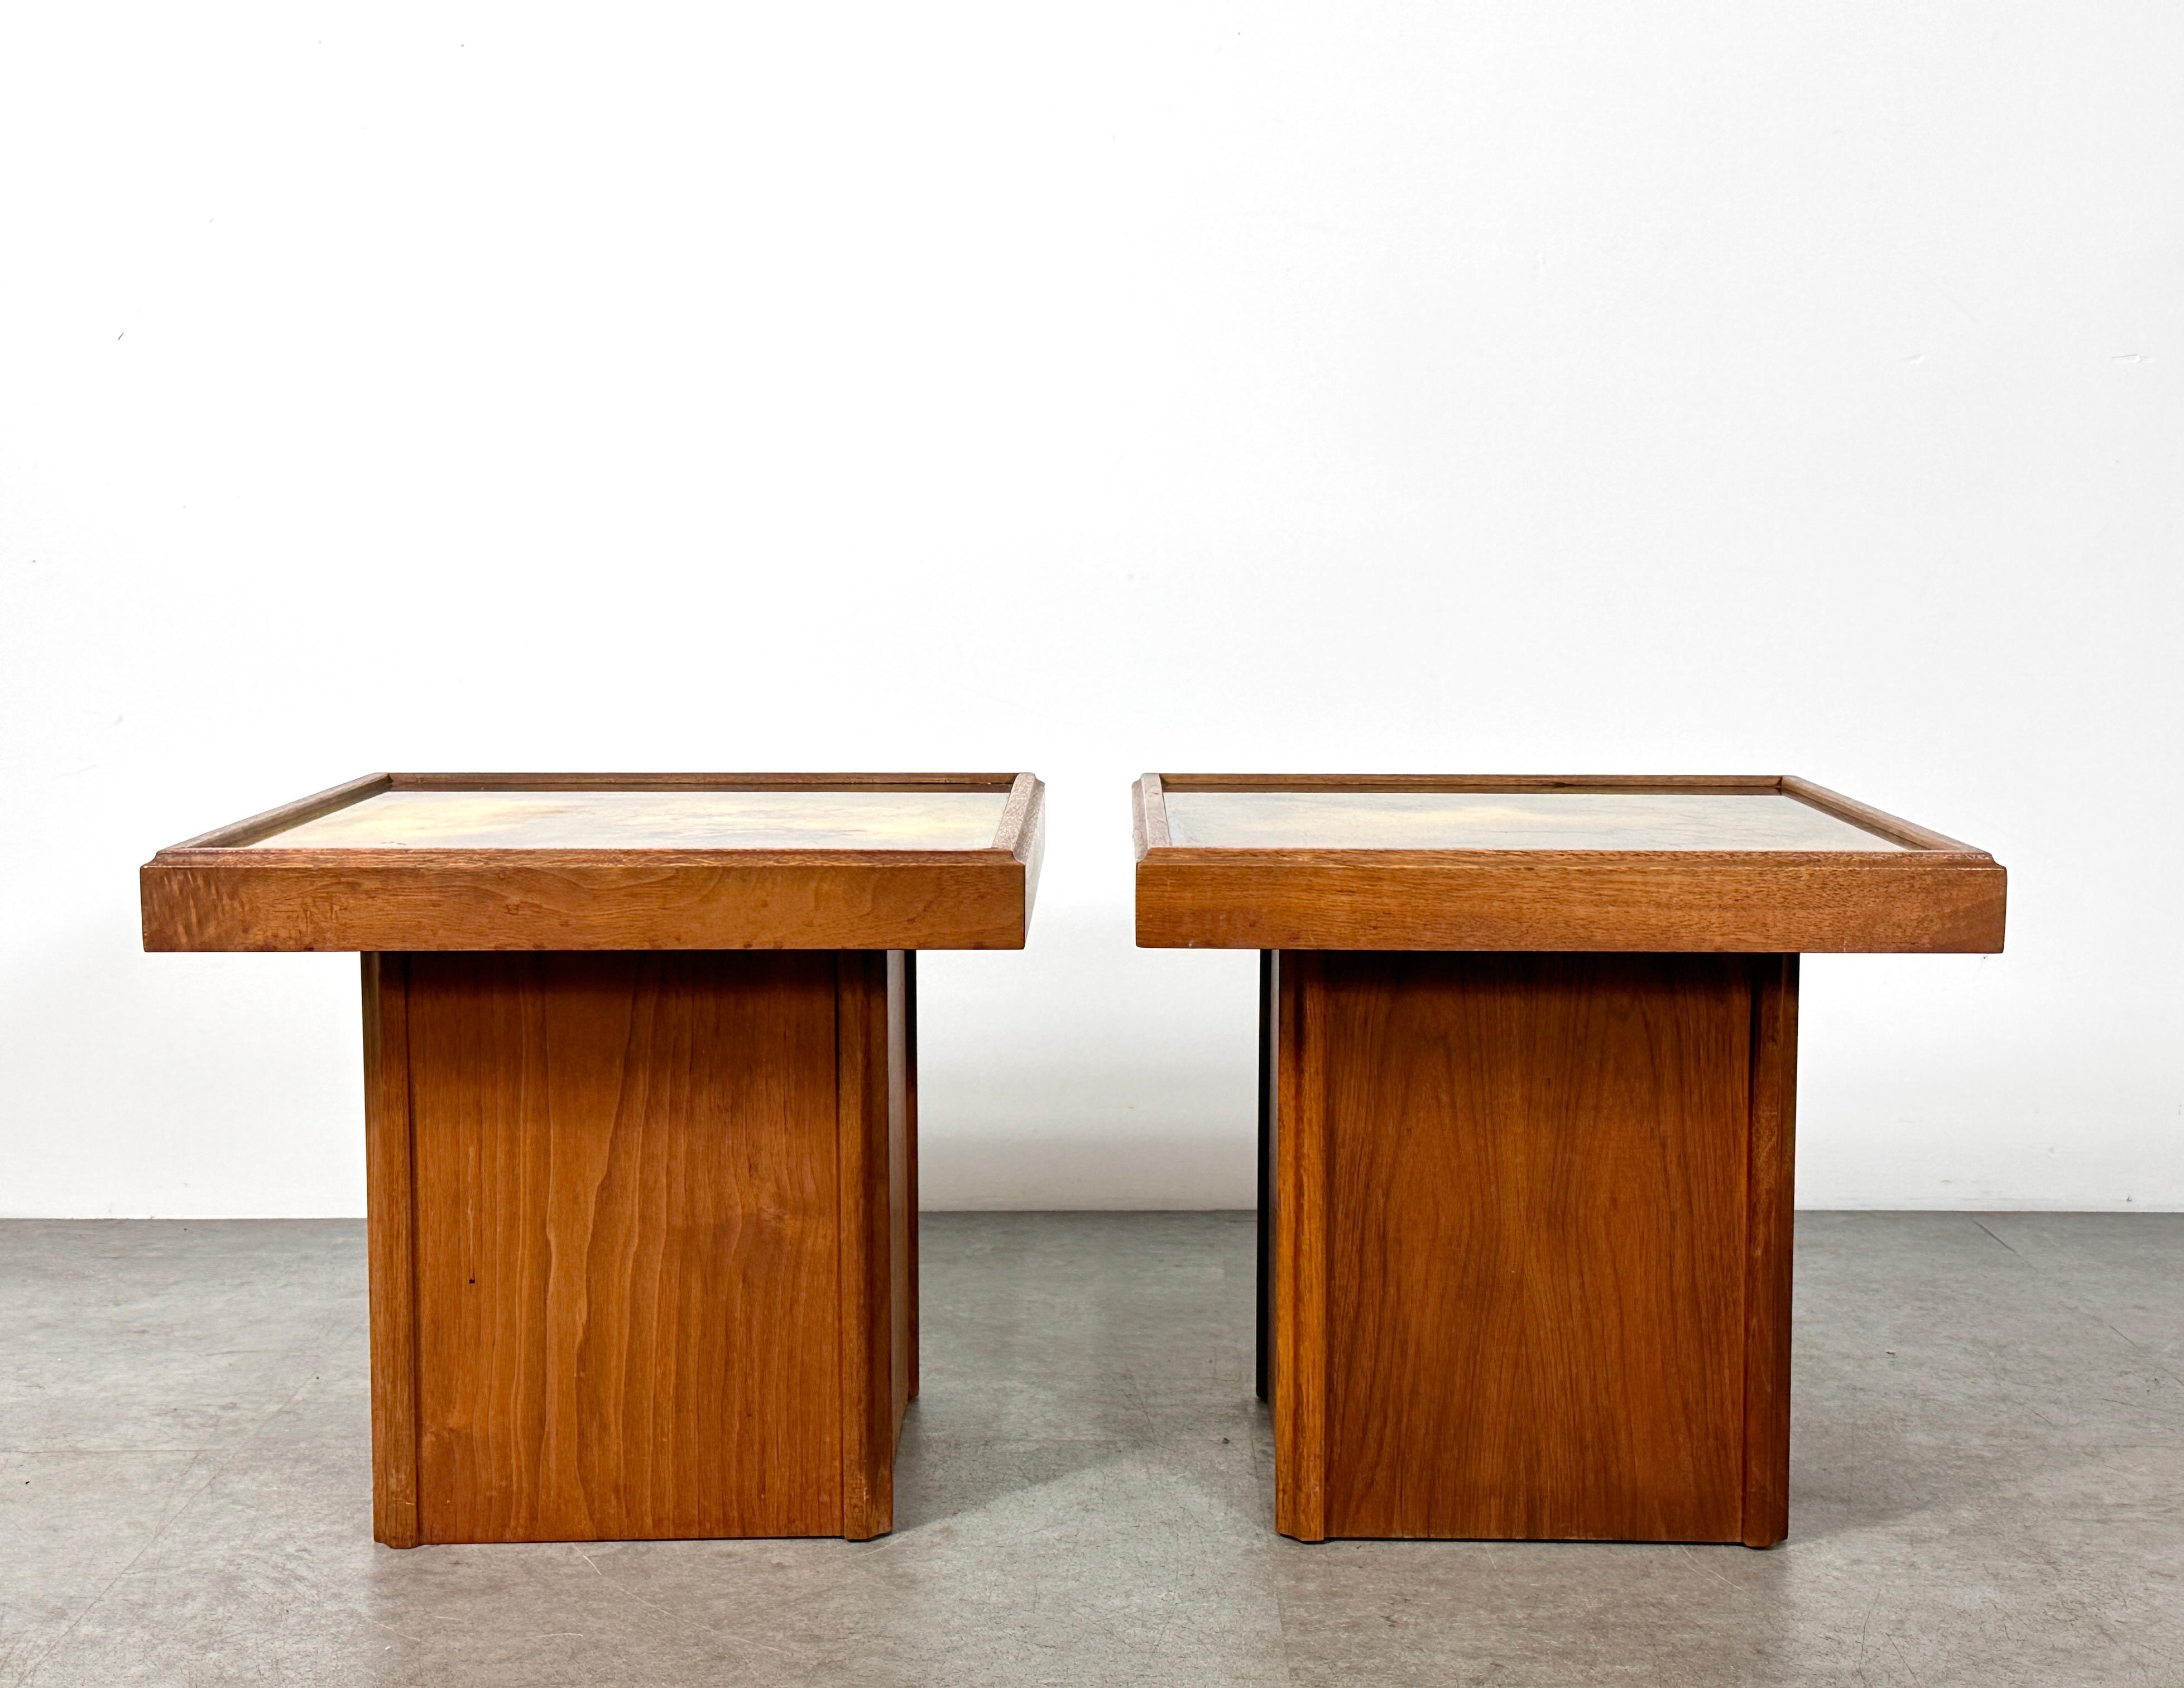 Paire unique de tables d'appoint conçues par John Keal pour Brown Saltman vers les années 1950
Socles carrés en noyer avec surfaces décoratives en verre peint à l'envers dans des tons dorés tachetés.
Les deux tables conservent leur Label d'origine